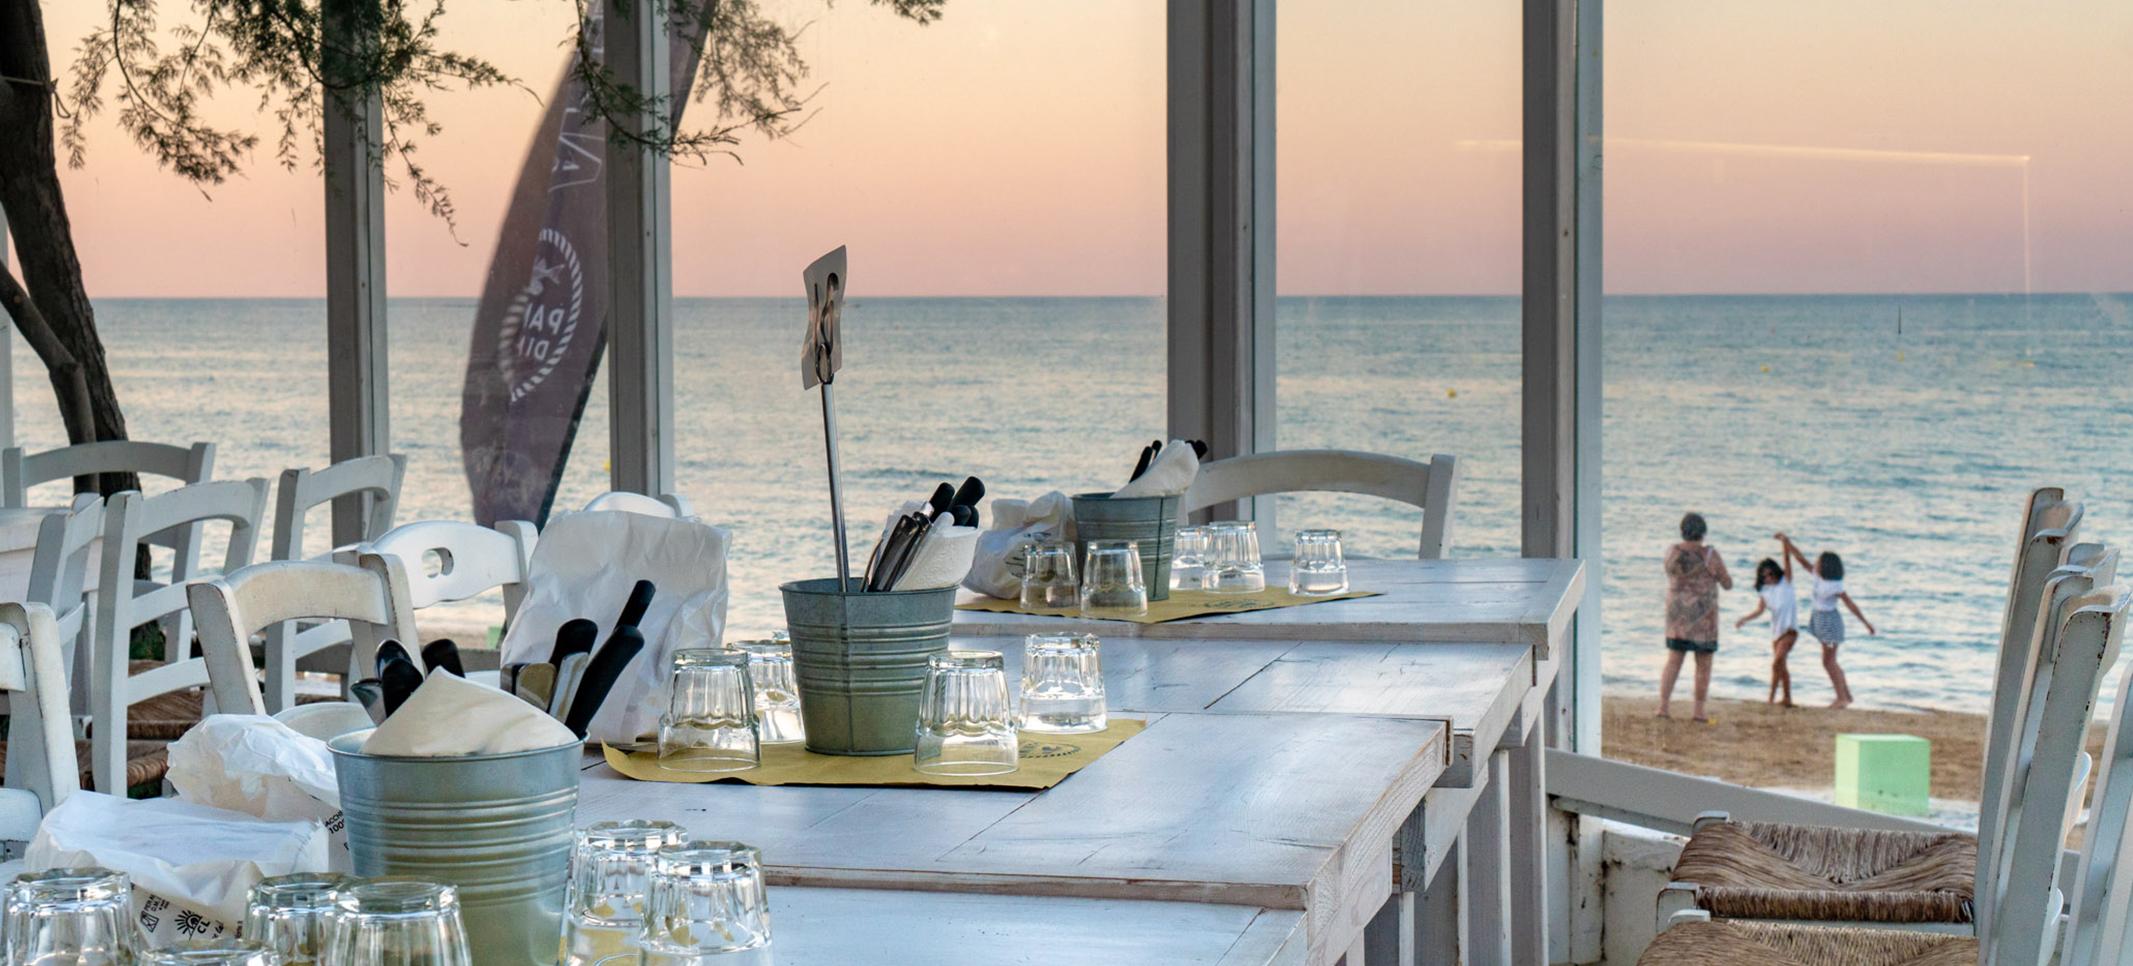 Sonnenuntergang am Strand, dazu feinstes italienisches Essen und lokalen Wein - noch Fragen?